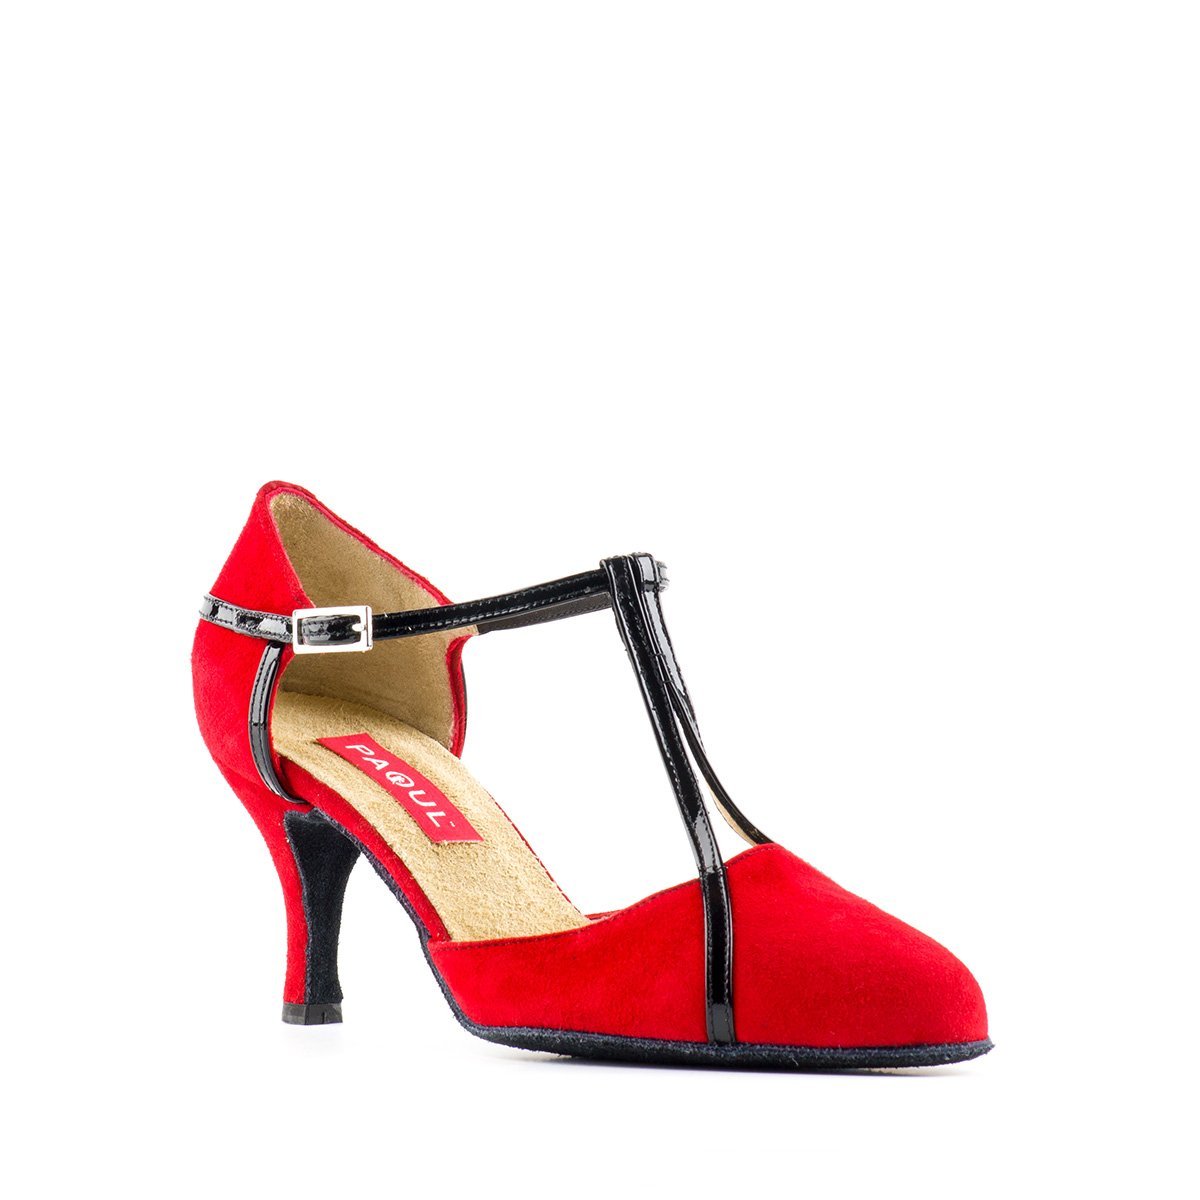 Tango dance shoe for women in red